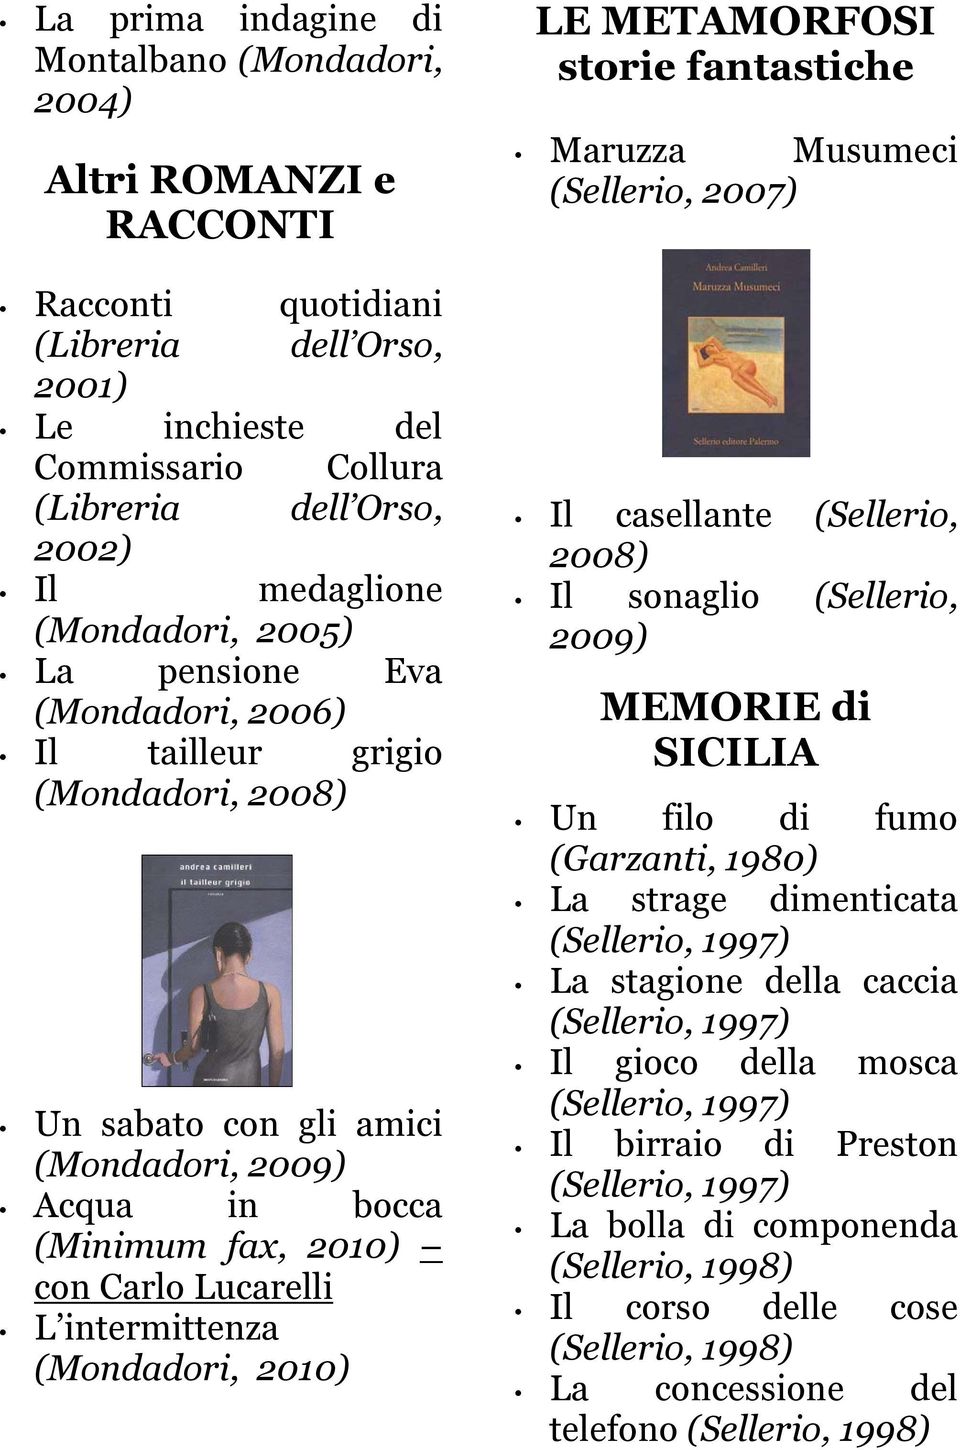 intermittenza (Mondadori, 2010) LE METAMORFOSI storie fantastiche Maruzza Musumeci (Sellerio, 2007) Il casellante (Sellerio, 2008) Il sonaglio (Sellerio, 2009) MEMORIE di SICILIA Un filo di fumo